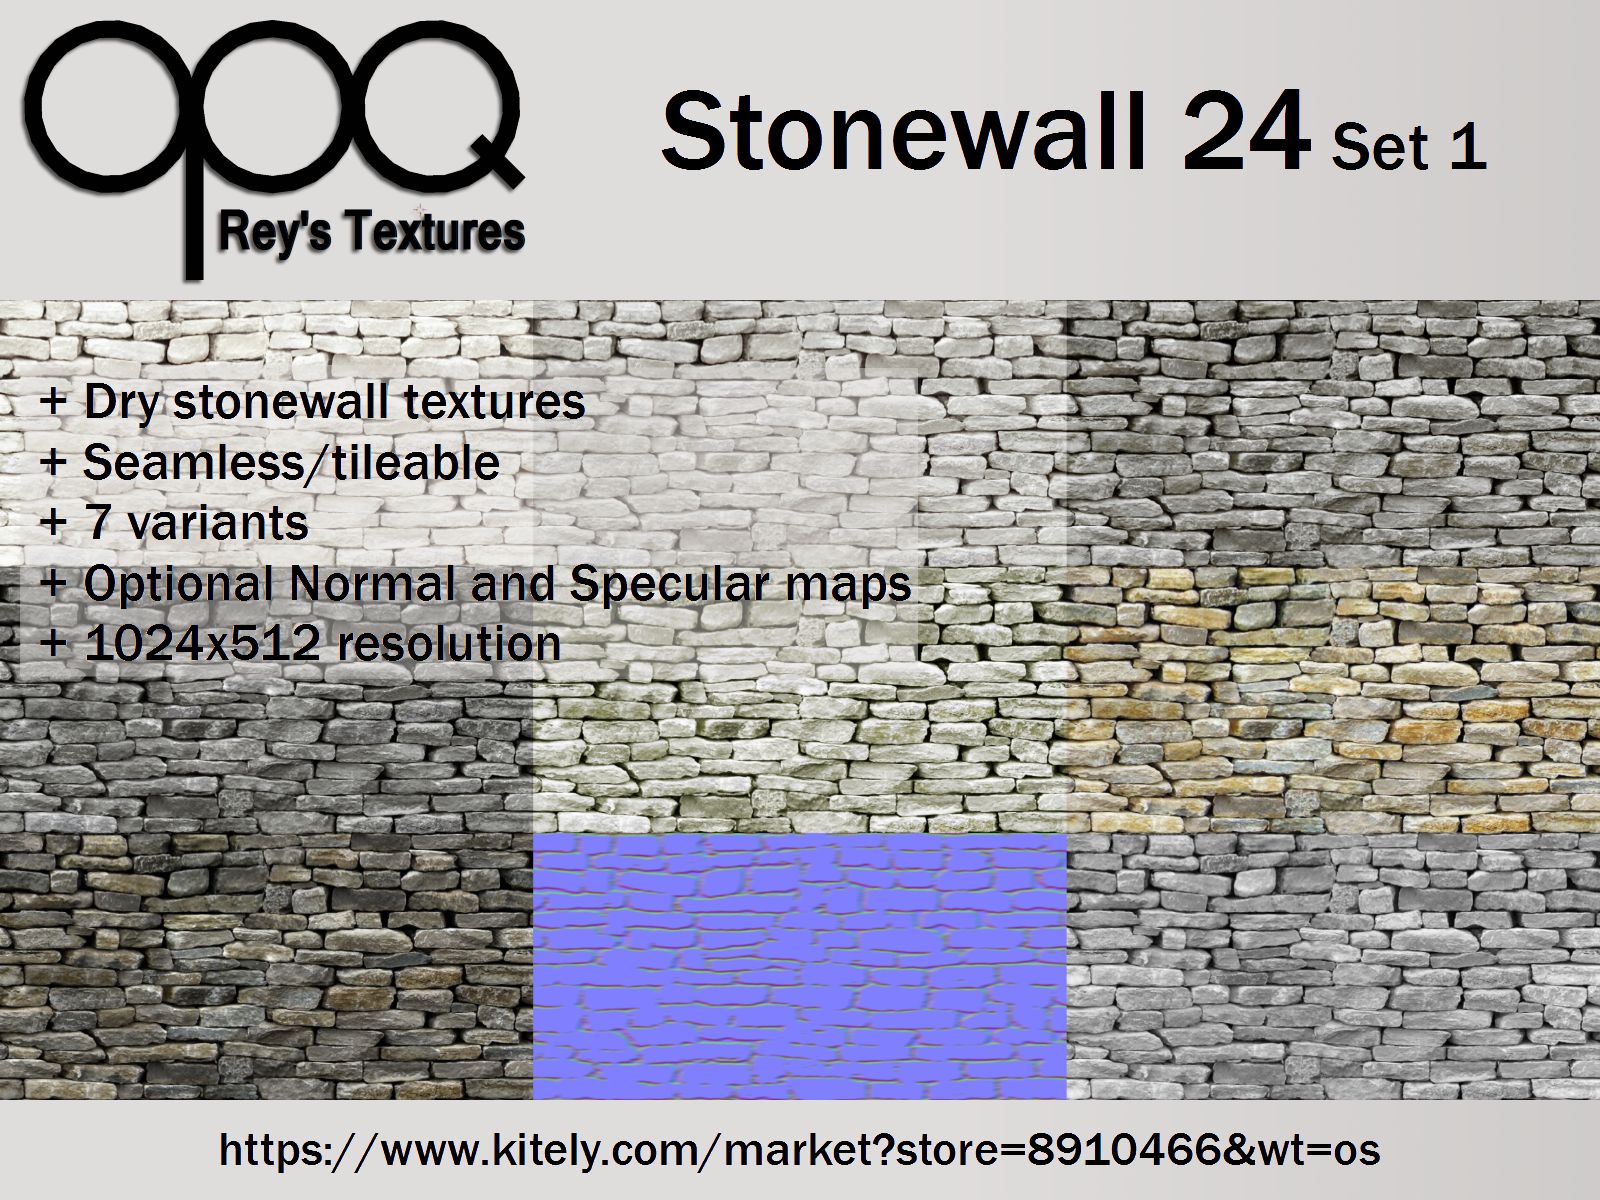 Rey's Stonewall 24 Set 1 Poster Kitely.jpg